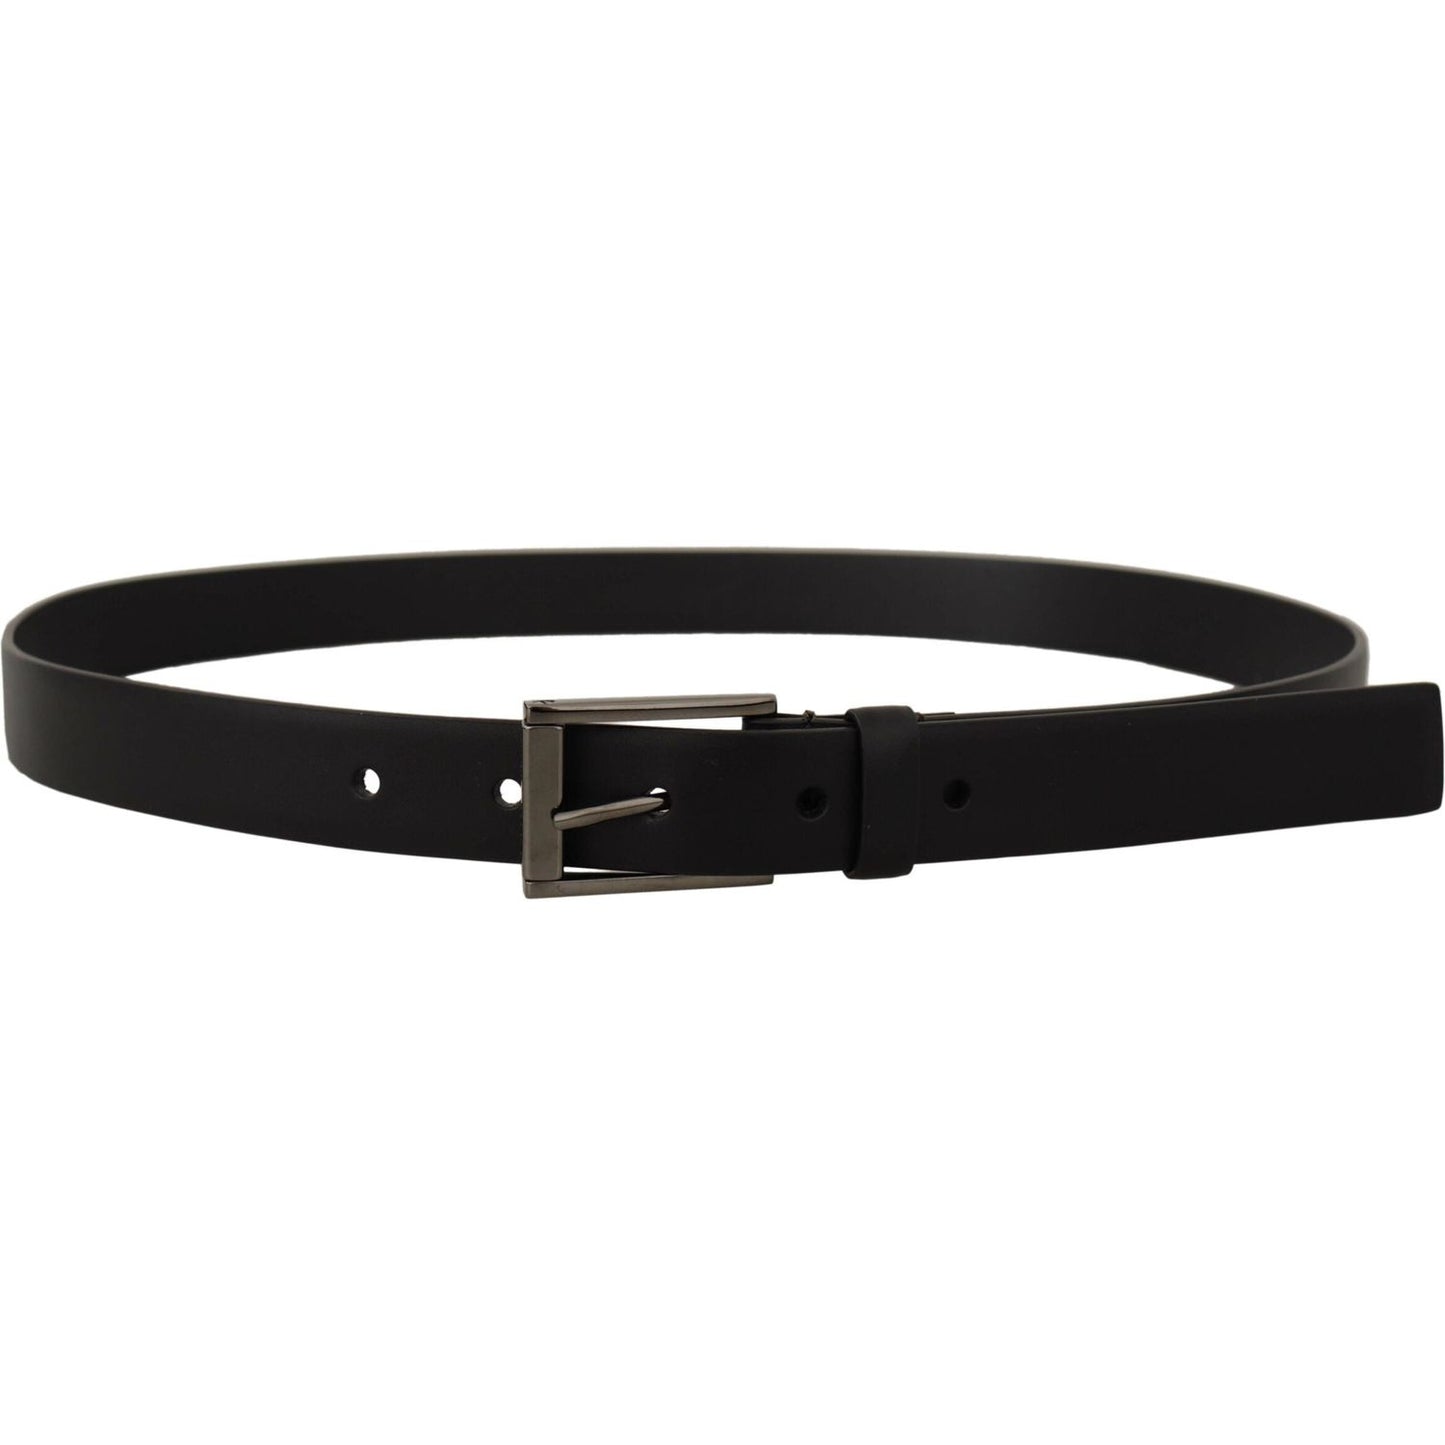 Dolce & Gabbana Elegant Black Leather Belt with Metal Buckle black-calf-leather-vintage-steel-logo-buckle-belt IMG_5434-scaled-1548885c-49f.jpg